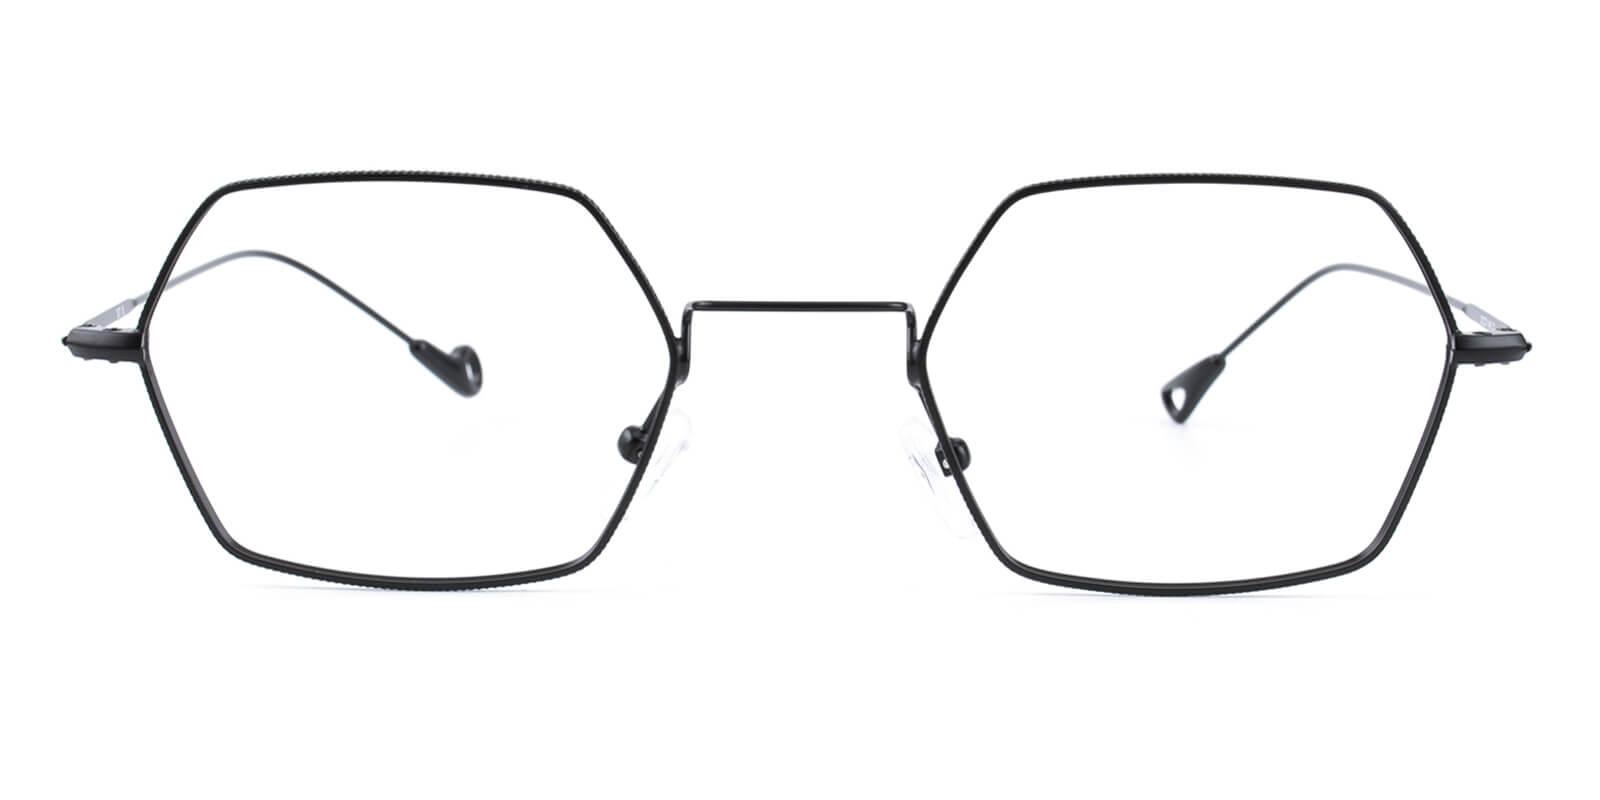 Goldien-Black-Geometric-Metal-Eyeglasses-detail